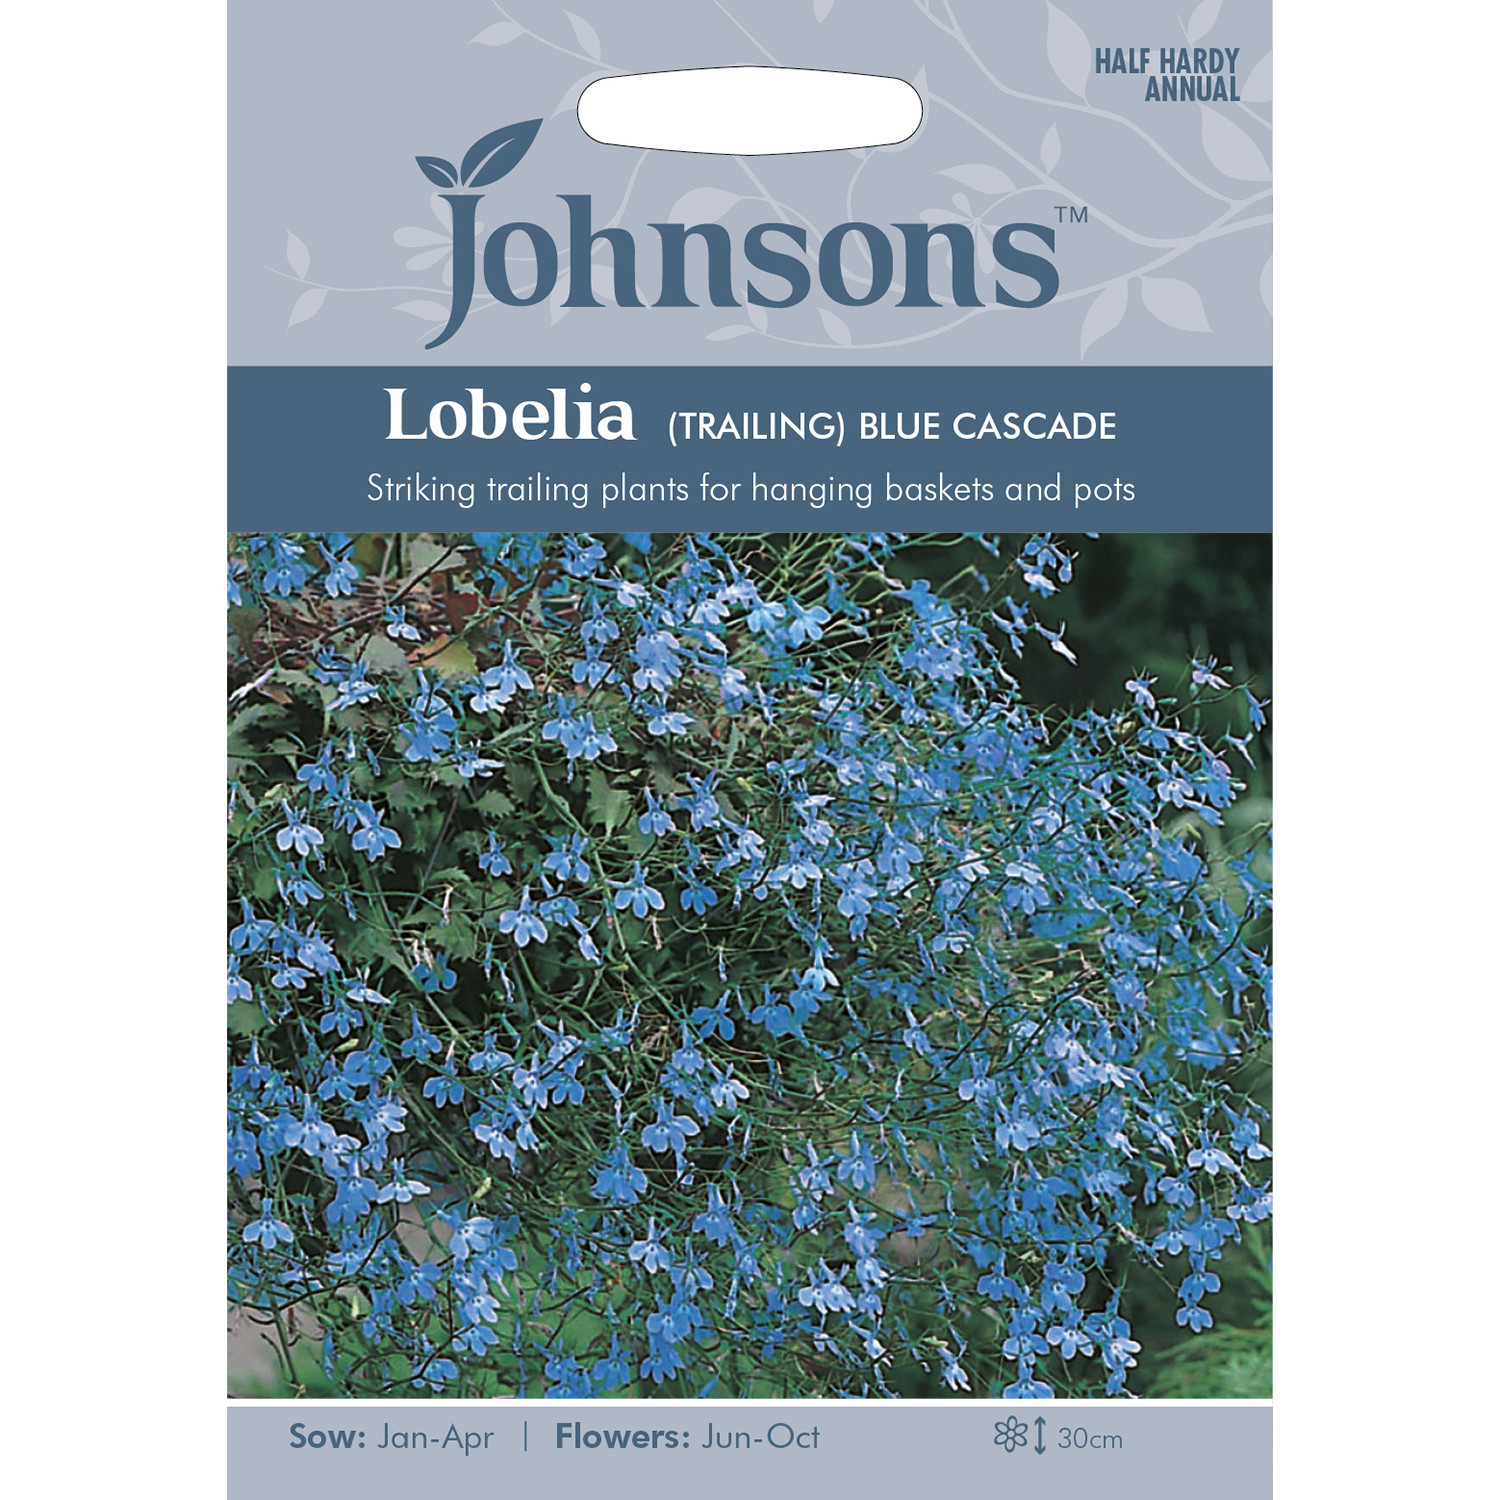 Johnsons Lobelia Trailing Blue Cascade Flower Seeds Image 2